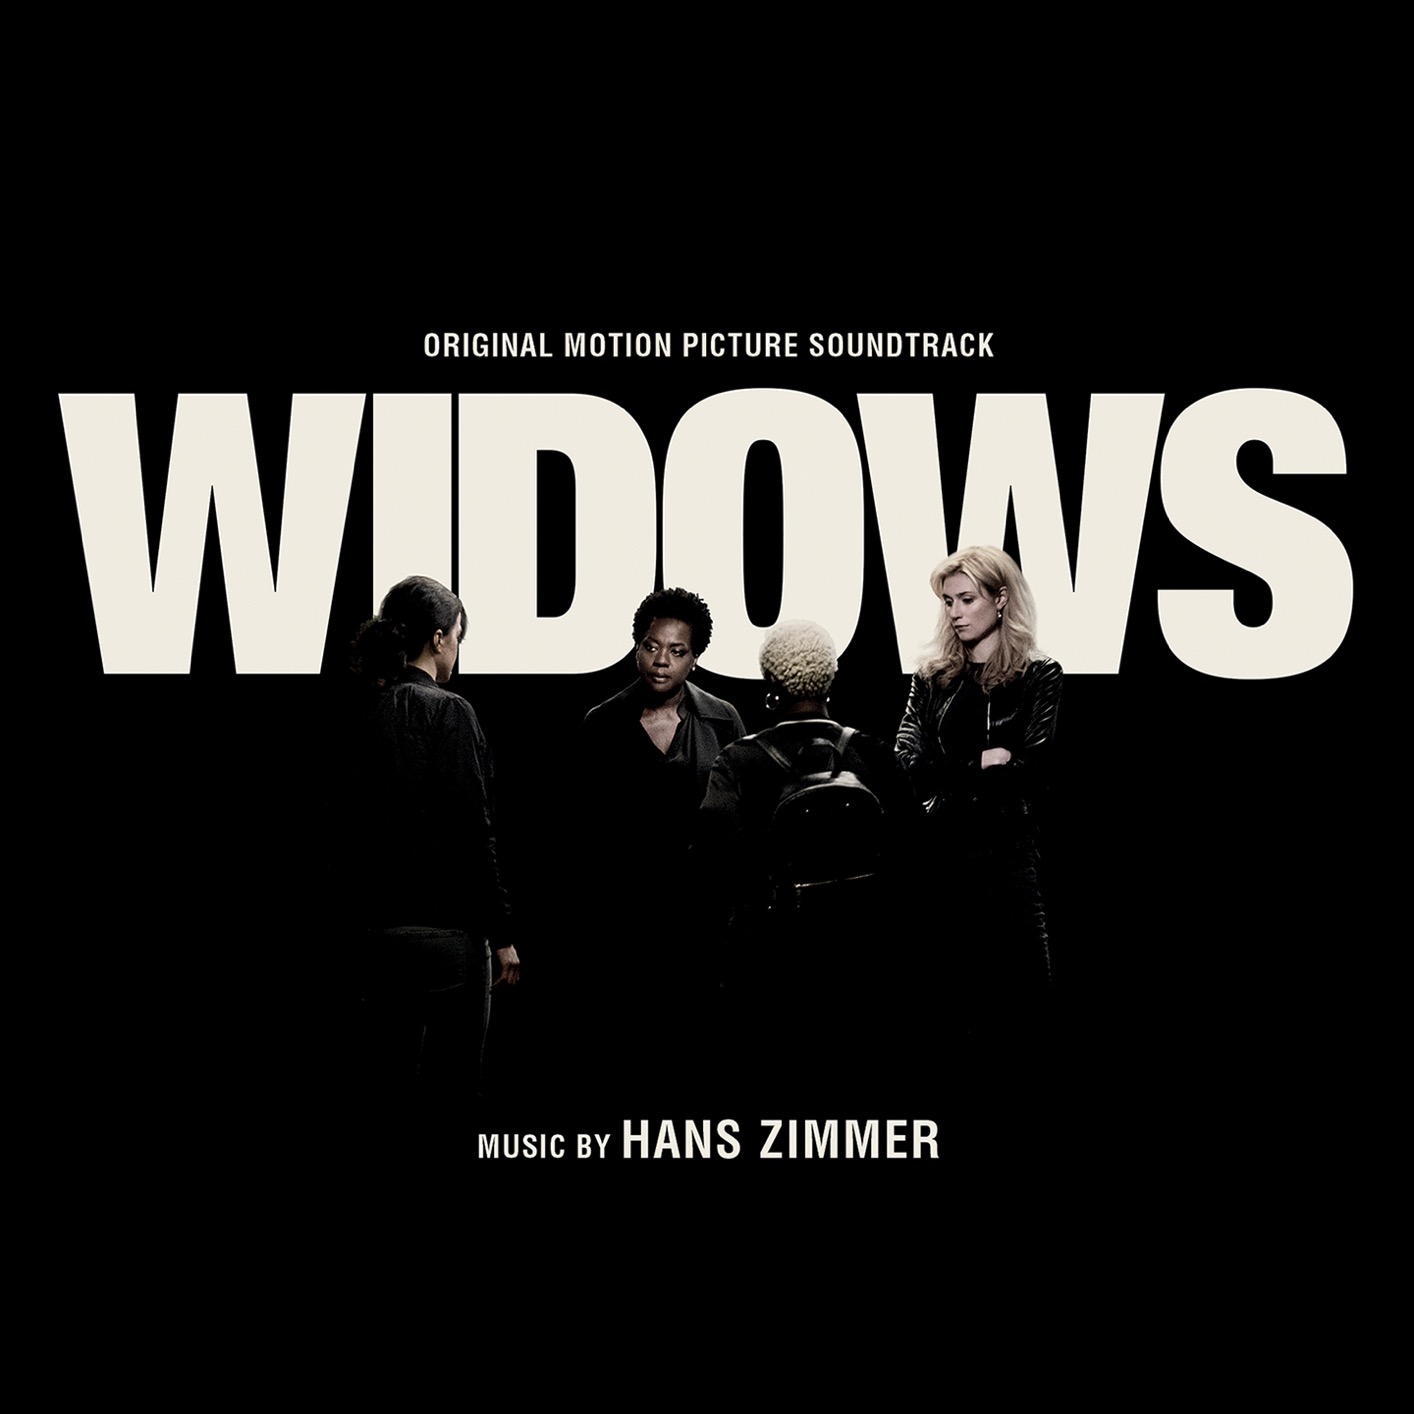 Hans Zimmer - Widows (Original Motion Picture Soundtrack) (2018) [FLAC 24bit/44,1kHz]